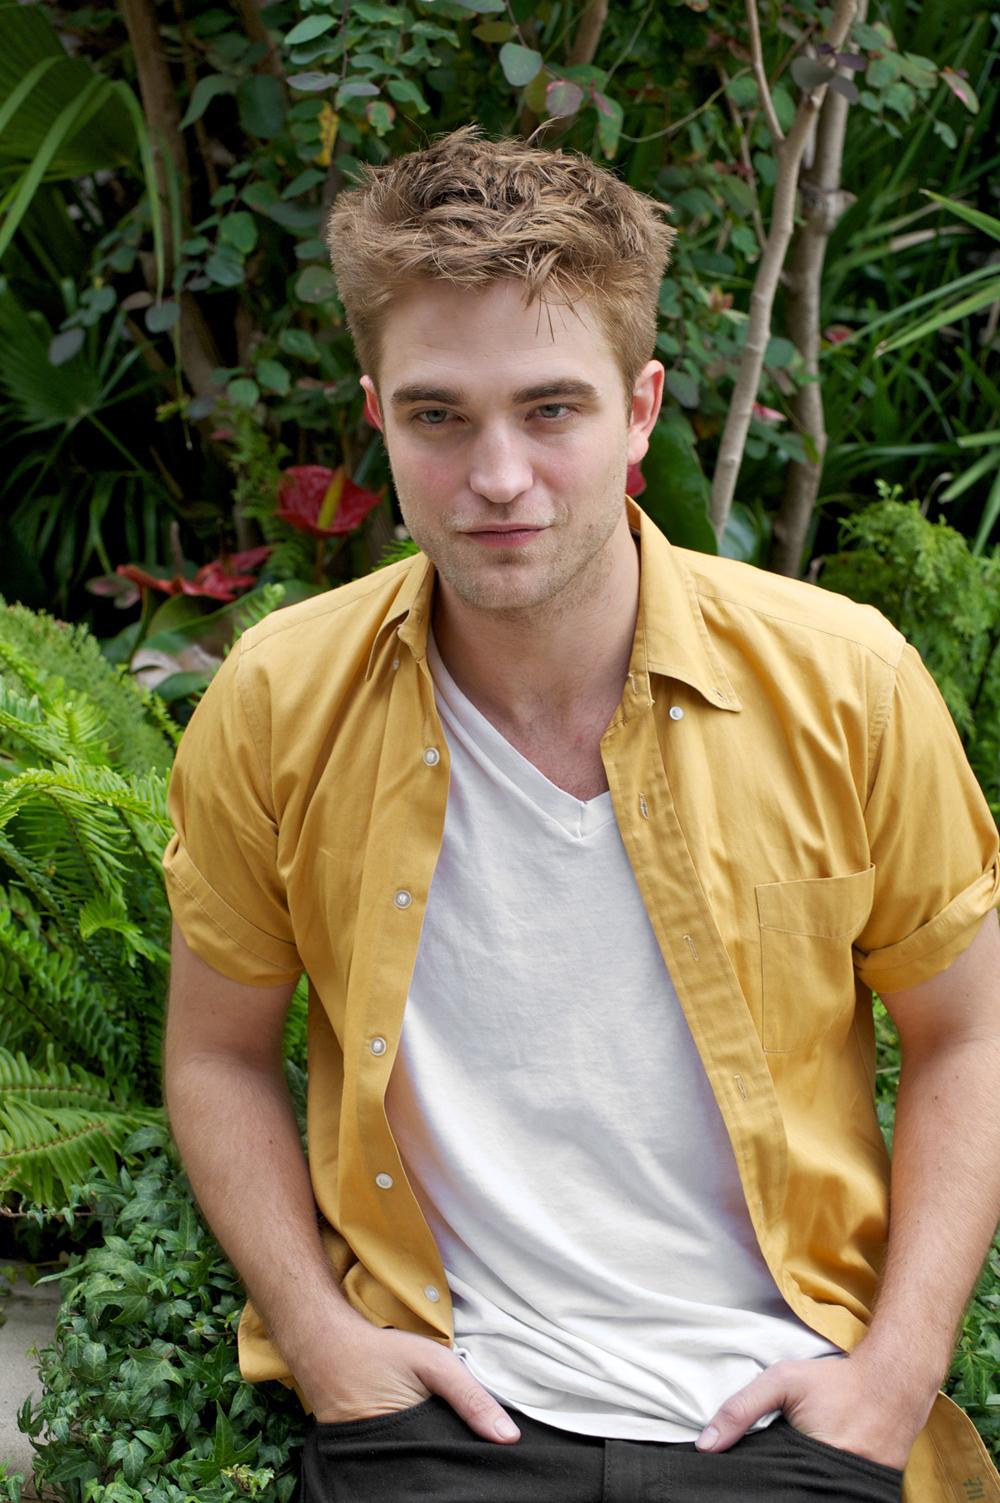 Photo №8907 Robert Pattinson.